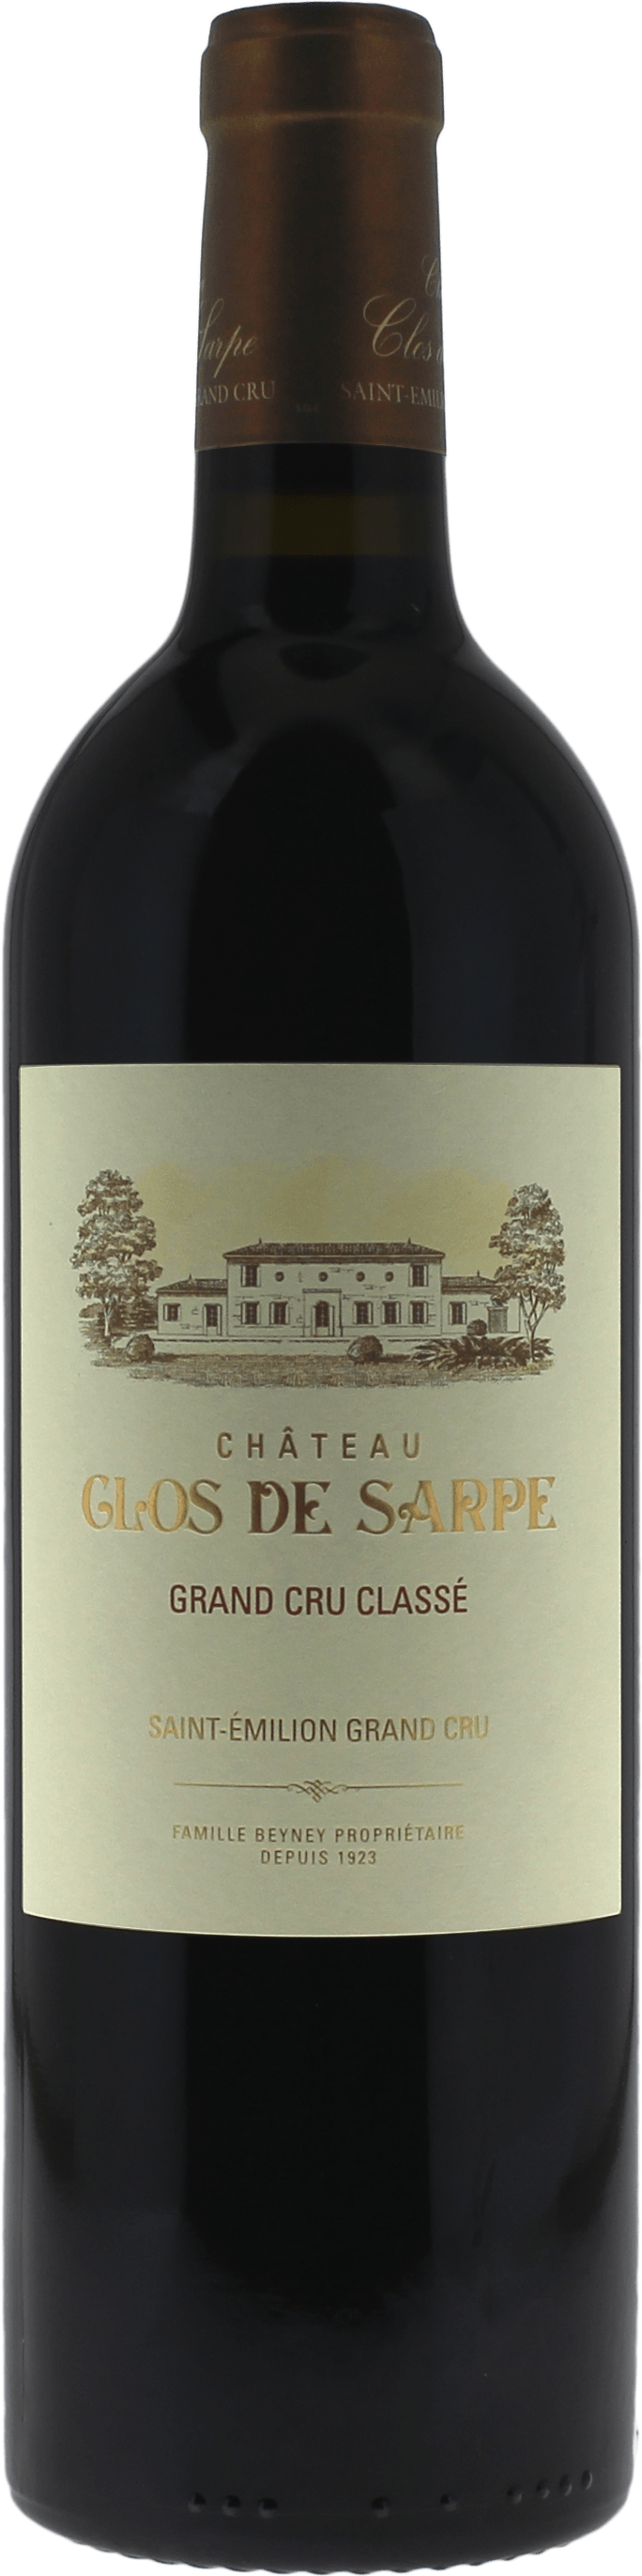 Clos de sarpe 1967 Grand Cru Class Saint-Emilion, Bordeaux rouge